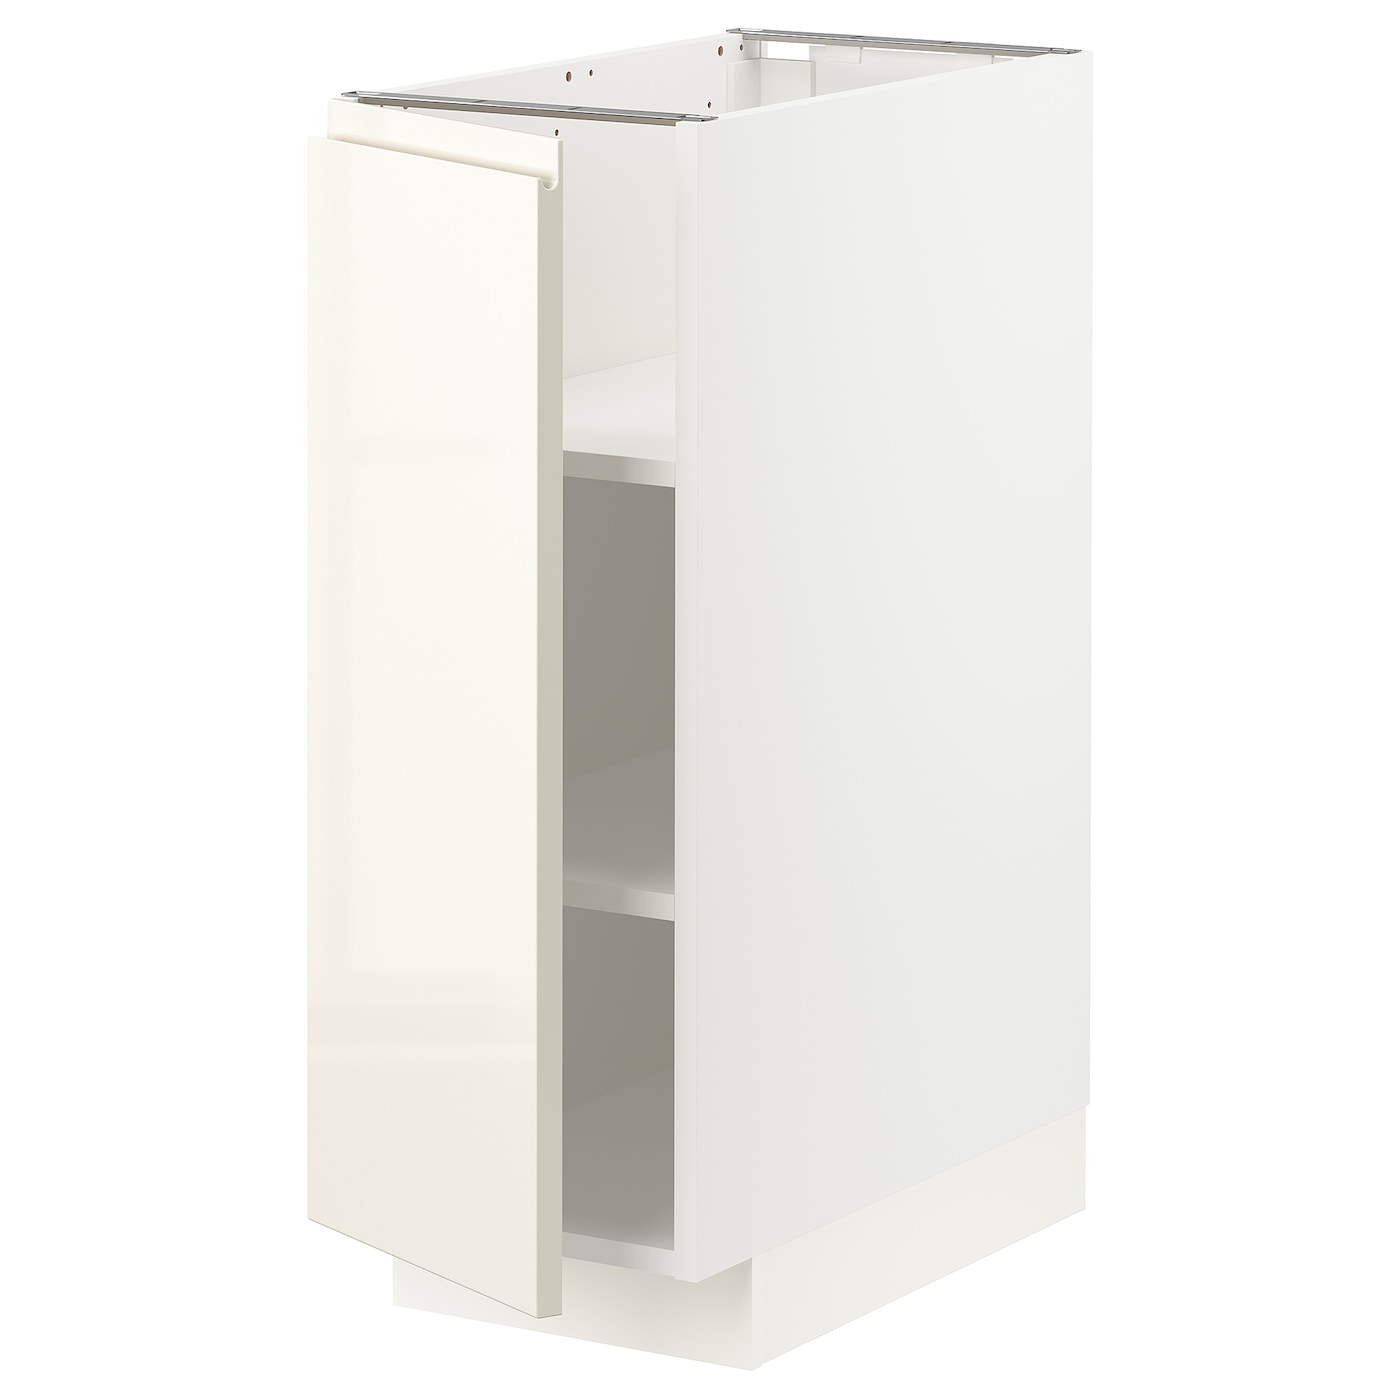 Напольный шкаф - IKEA METOD, 88x62x30см, белый/светлый ясень, МЕТОД ИКЕА